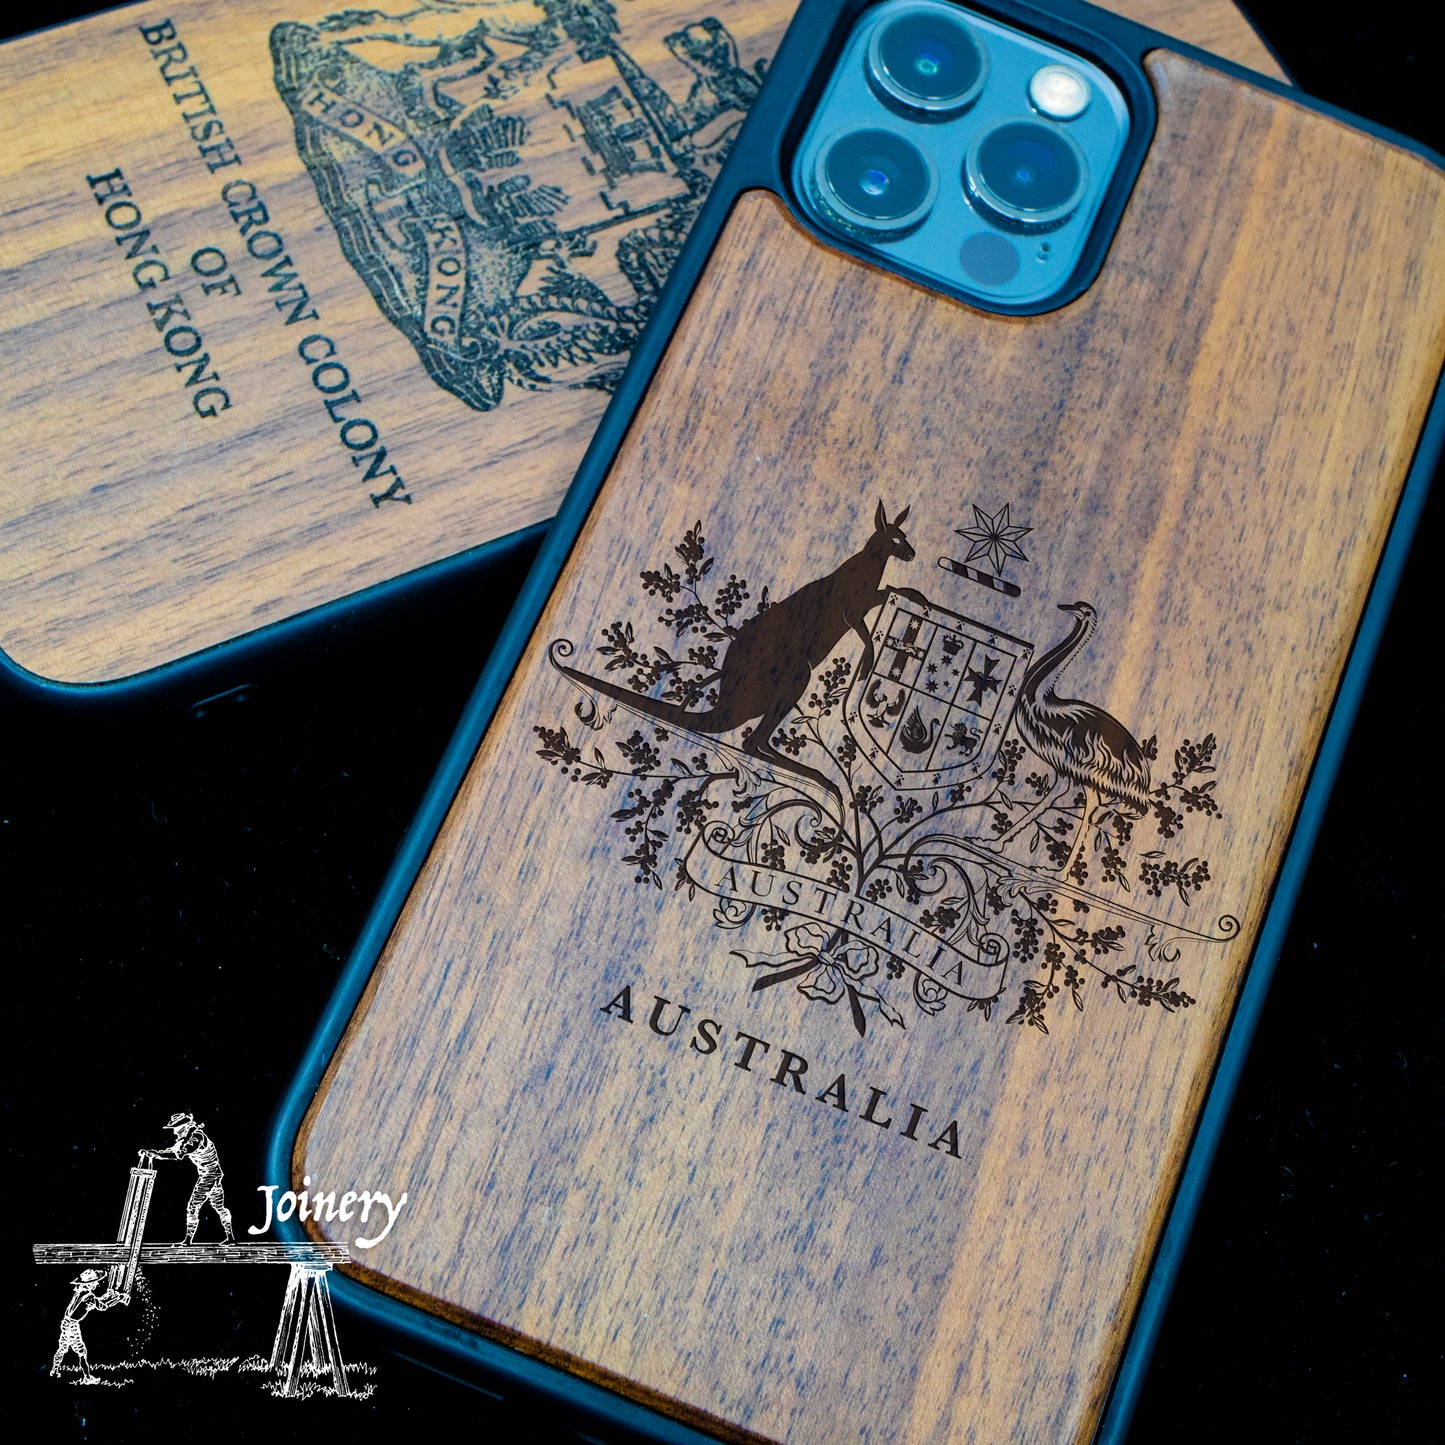 胡桃木 iPhone 手機殻 - 澳洲紋章